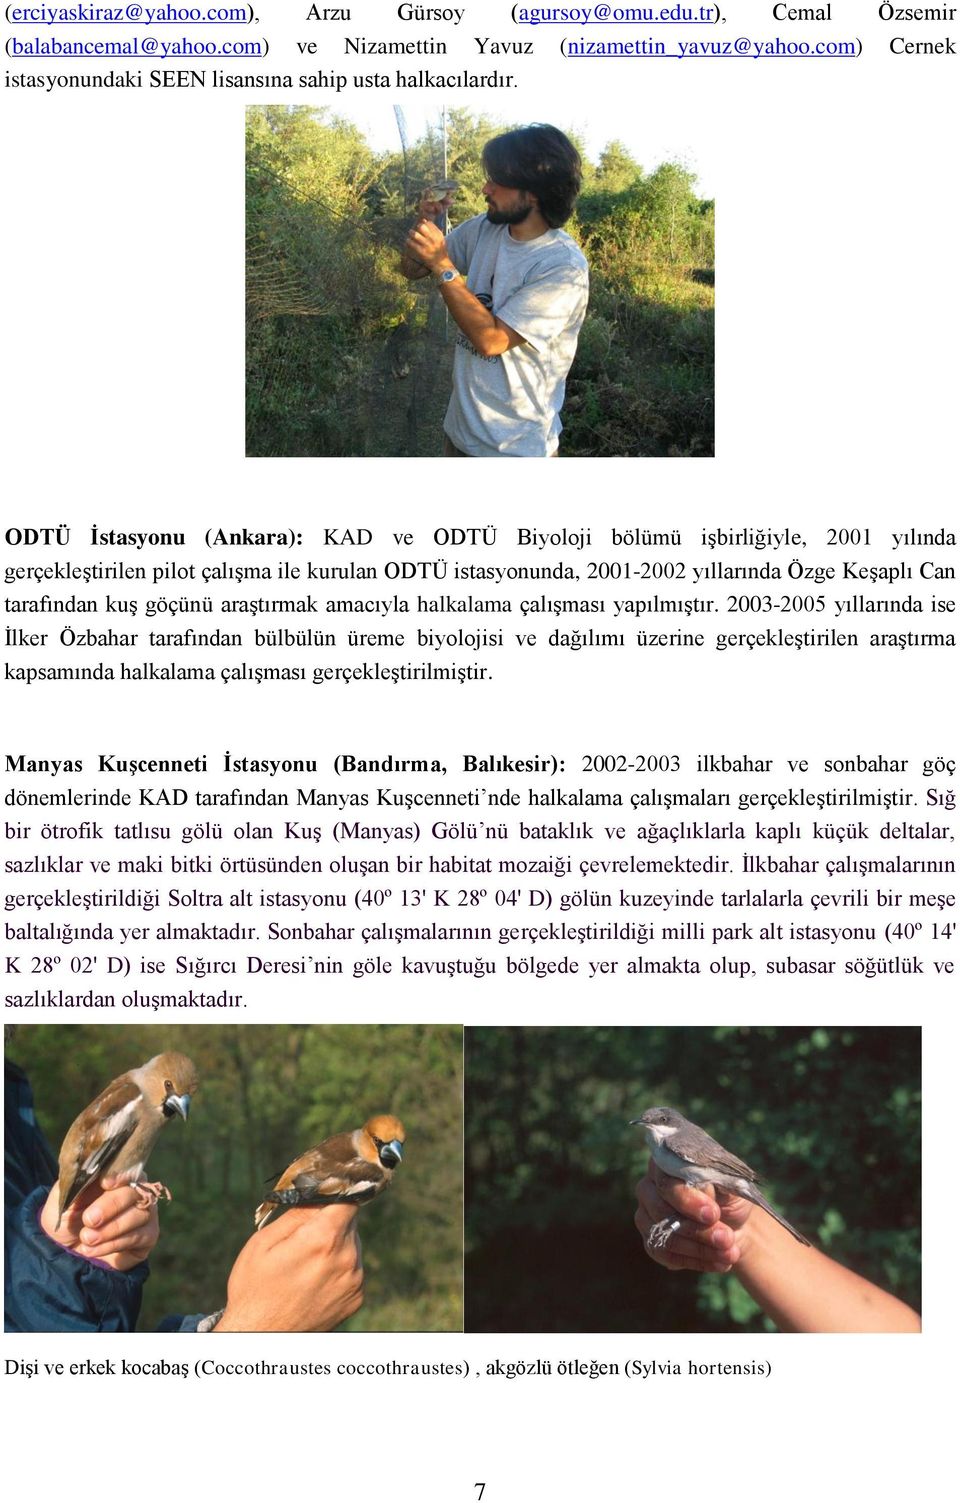 ODTÜ İstasyonu (Ankara): KAD ve ODTÜ Biyoloji bölümü işbirliğiyle, 2001 yılında gerçekleştirilen pilot çalışma ile kurulan ODTÜ istasyonunda, 2001-2002 yıllarında Özge Keşaplı Can tarafından kuş